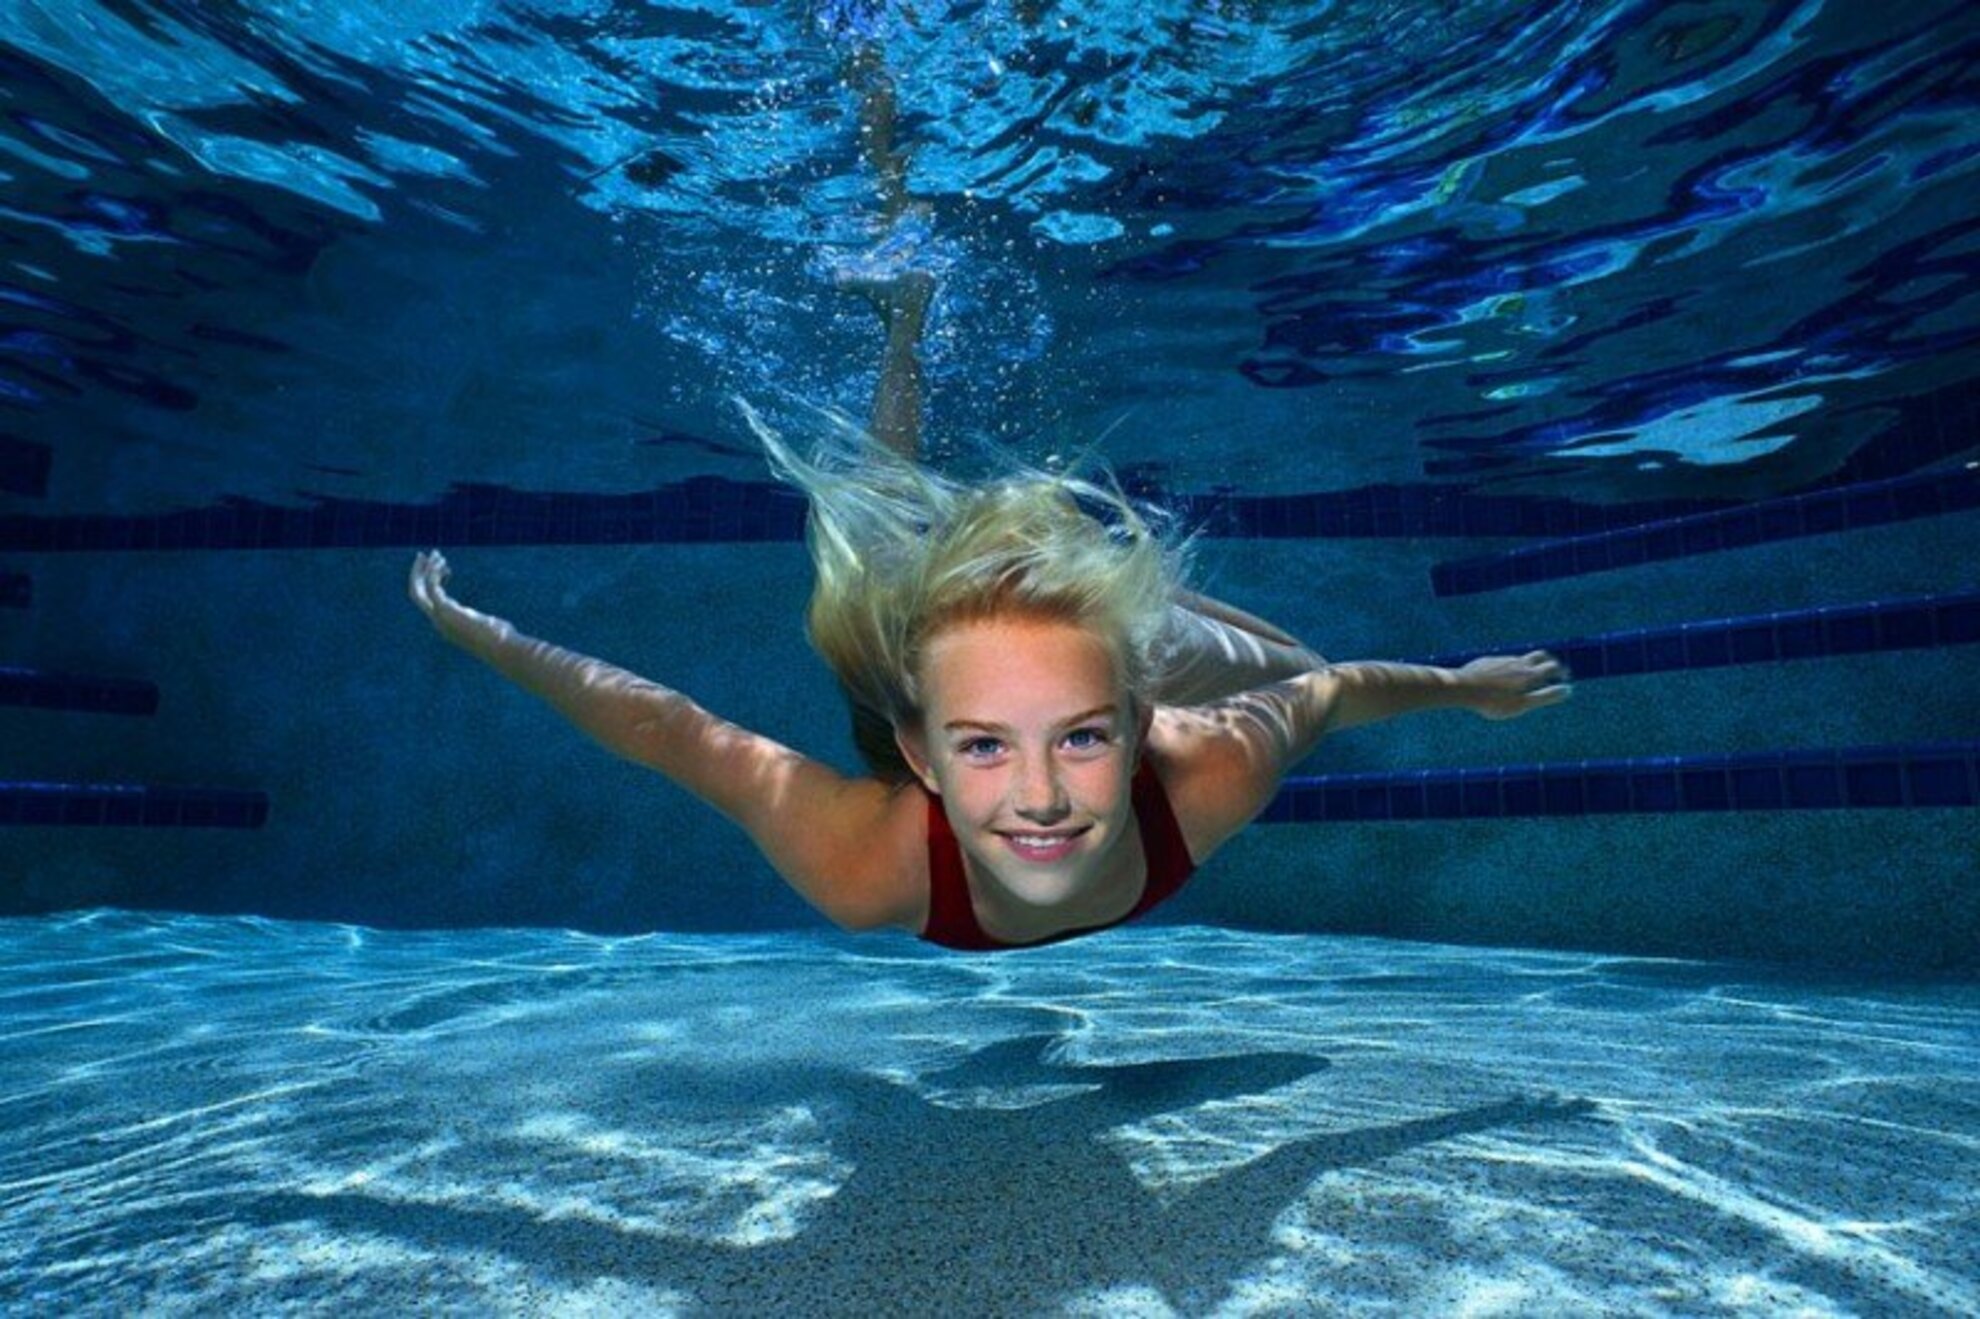 Вылилась вода из бассейна. Девушка в бассейне под водой. Бассейн под водой. Человек плывет под водой. Человек плывет в бассейне.